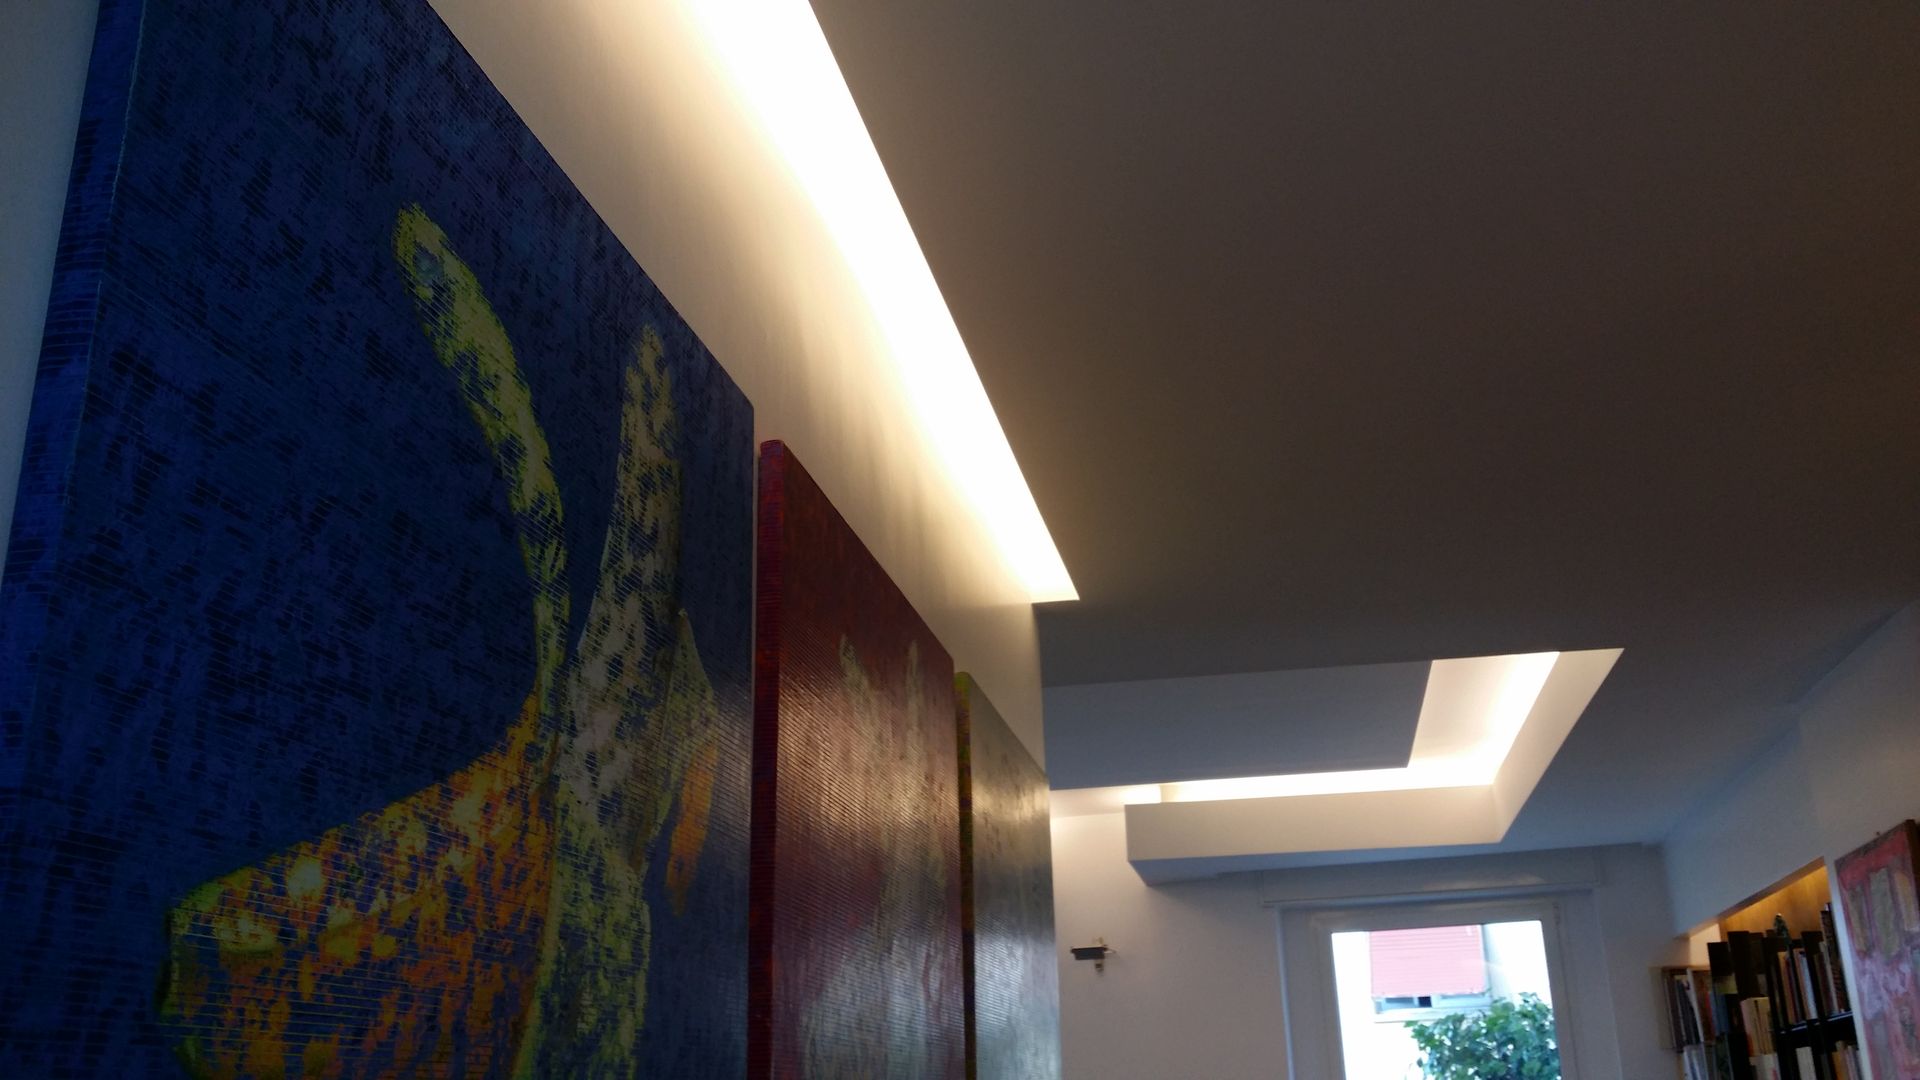 Appartamento residenziale nel quartiere Nomentano., studioQ studioQ Modern corridor, hallway & stairs